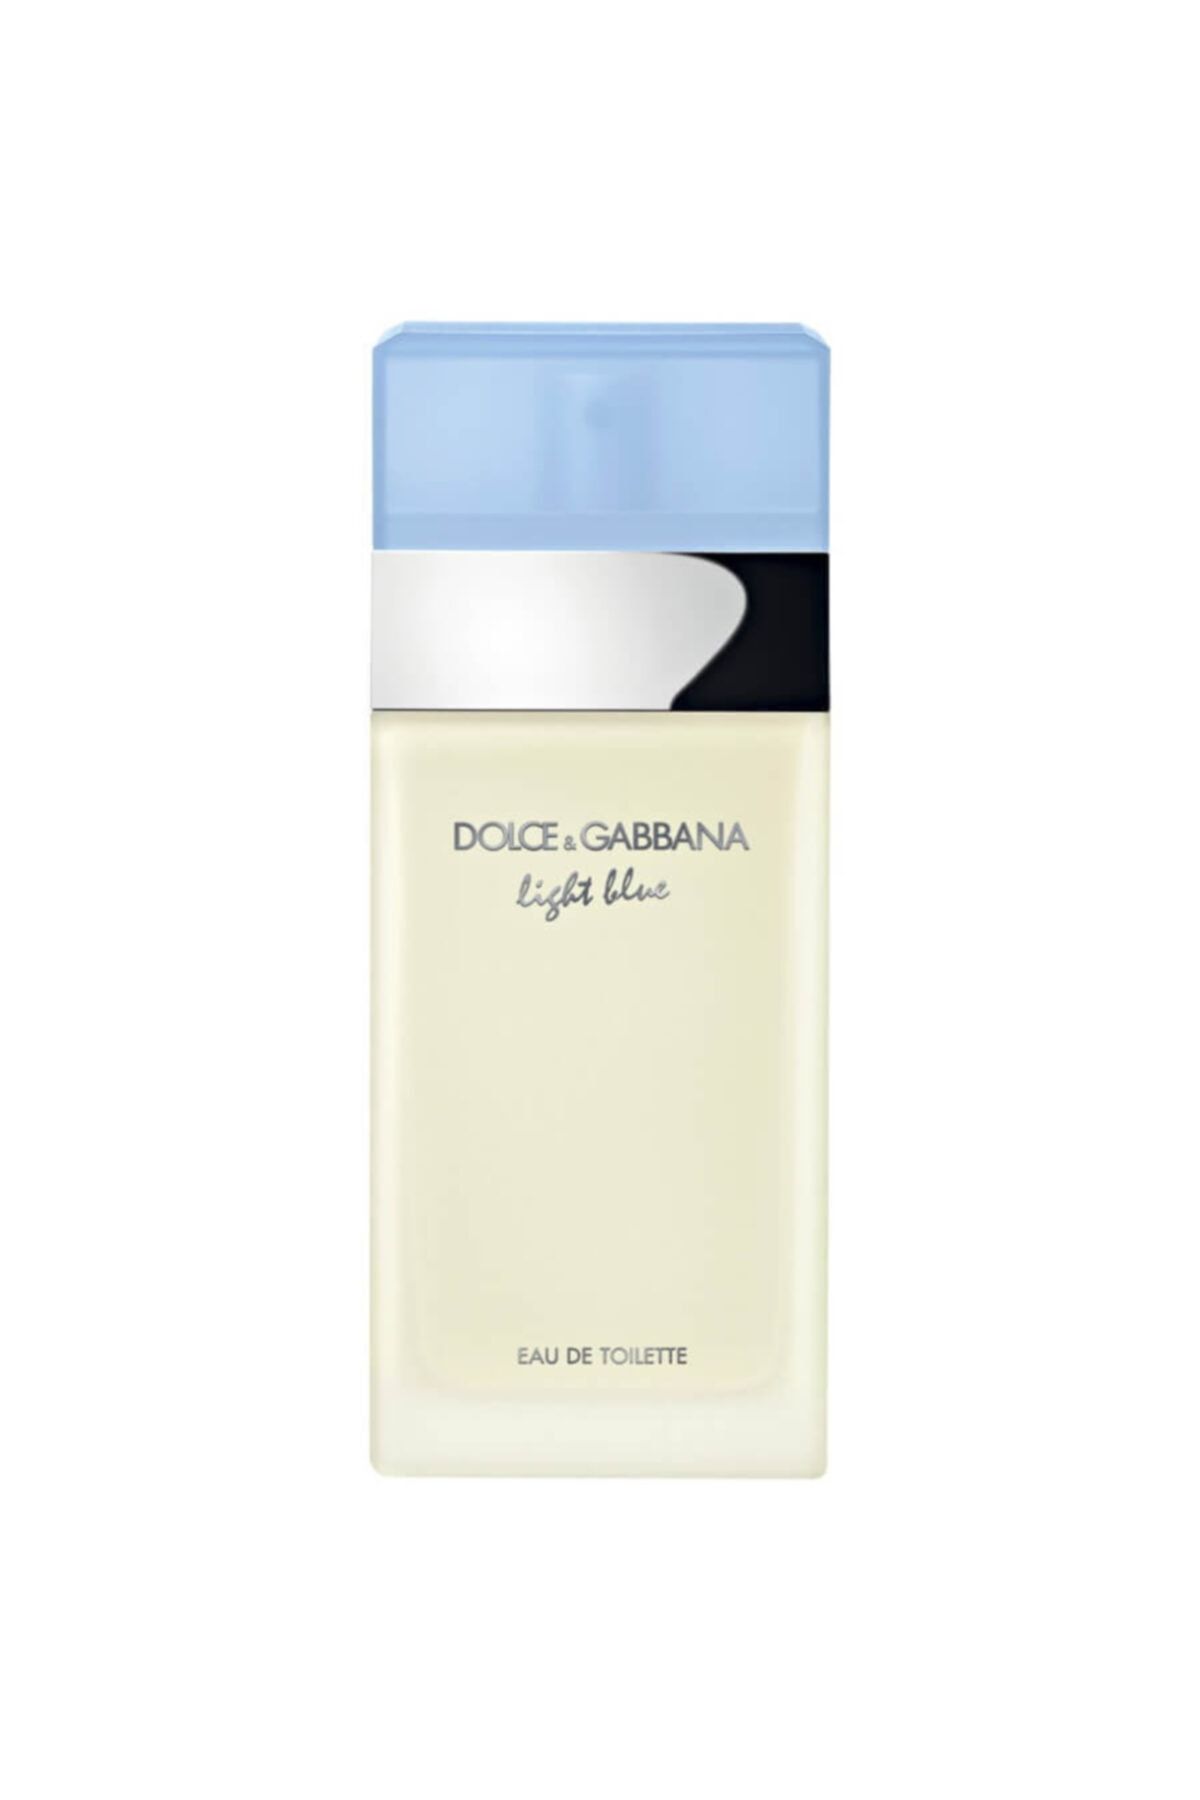 Dolce&Gabbana Light Blue Edt 50 m Kadın Parfüm 3423473020264